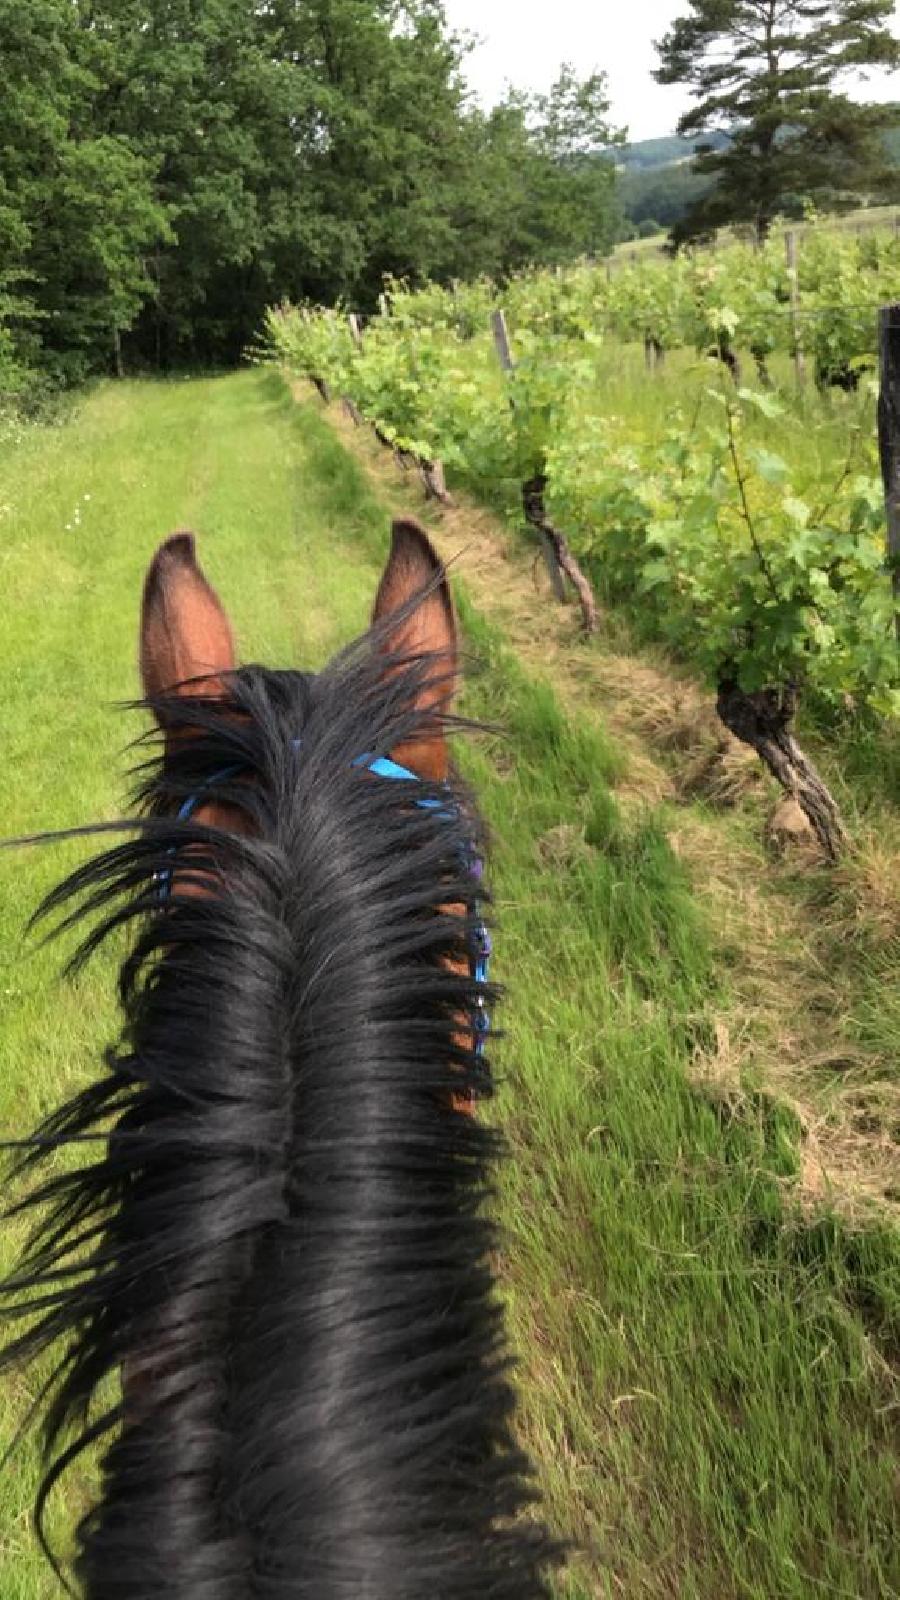 rando Balade à cheval Dordogne